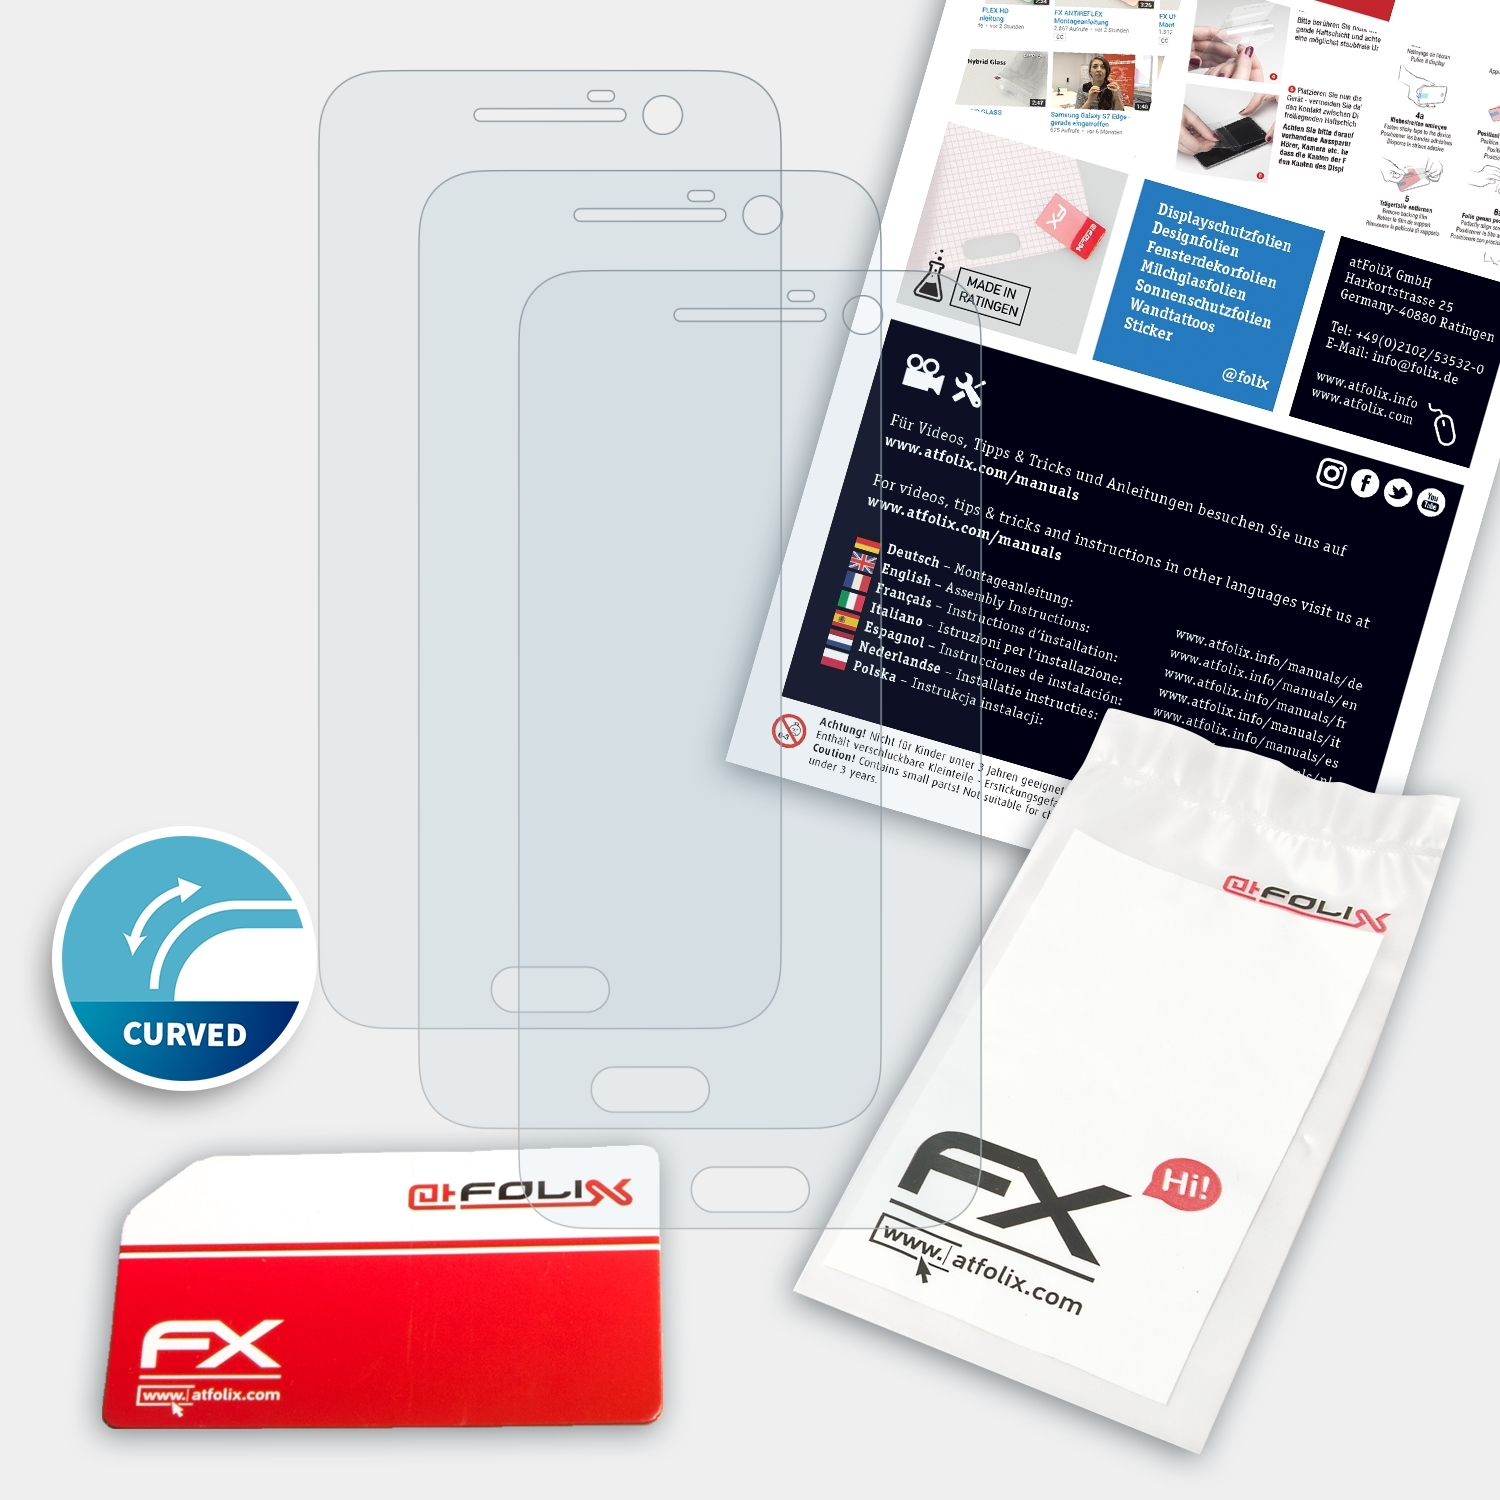 HTC FX-ActiFleX 3x ATFOLIX 10) Displayschutz(für